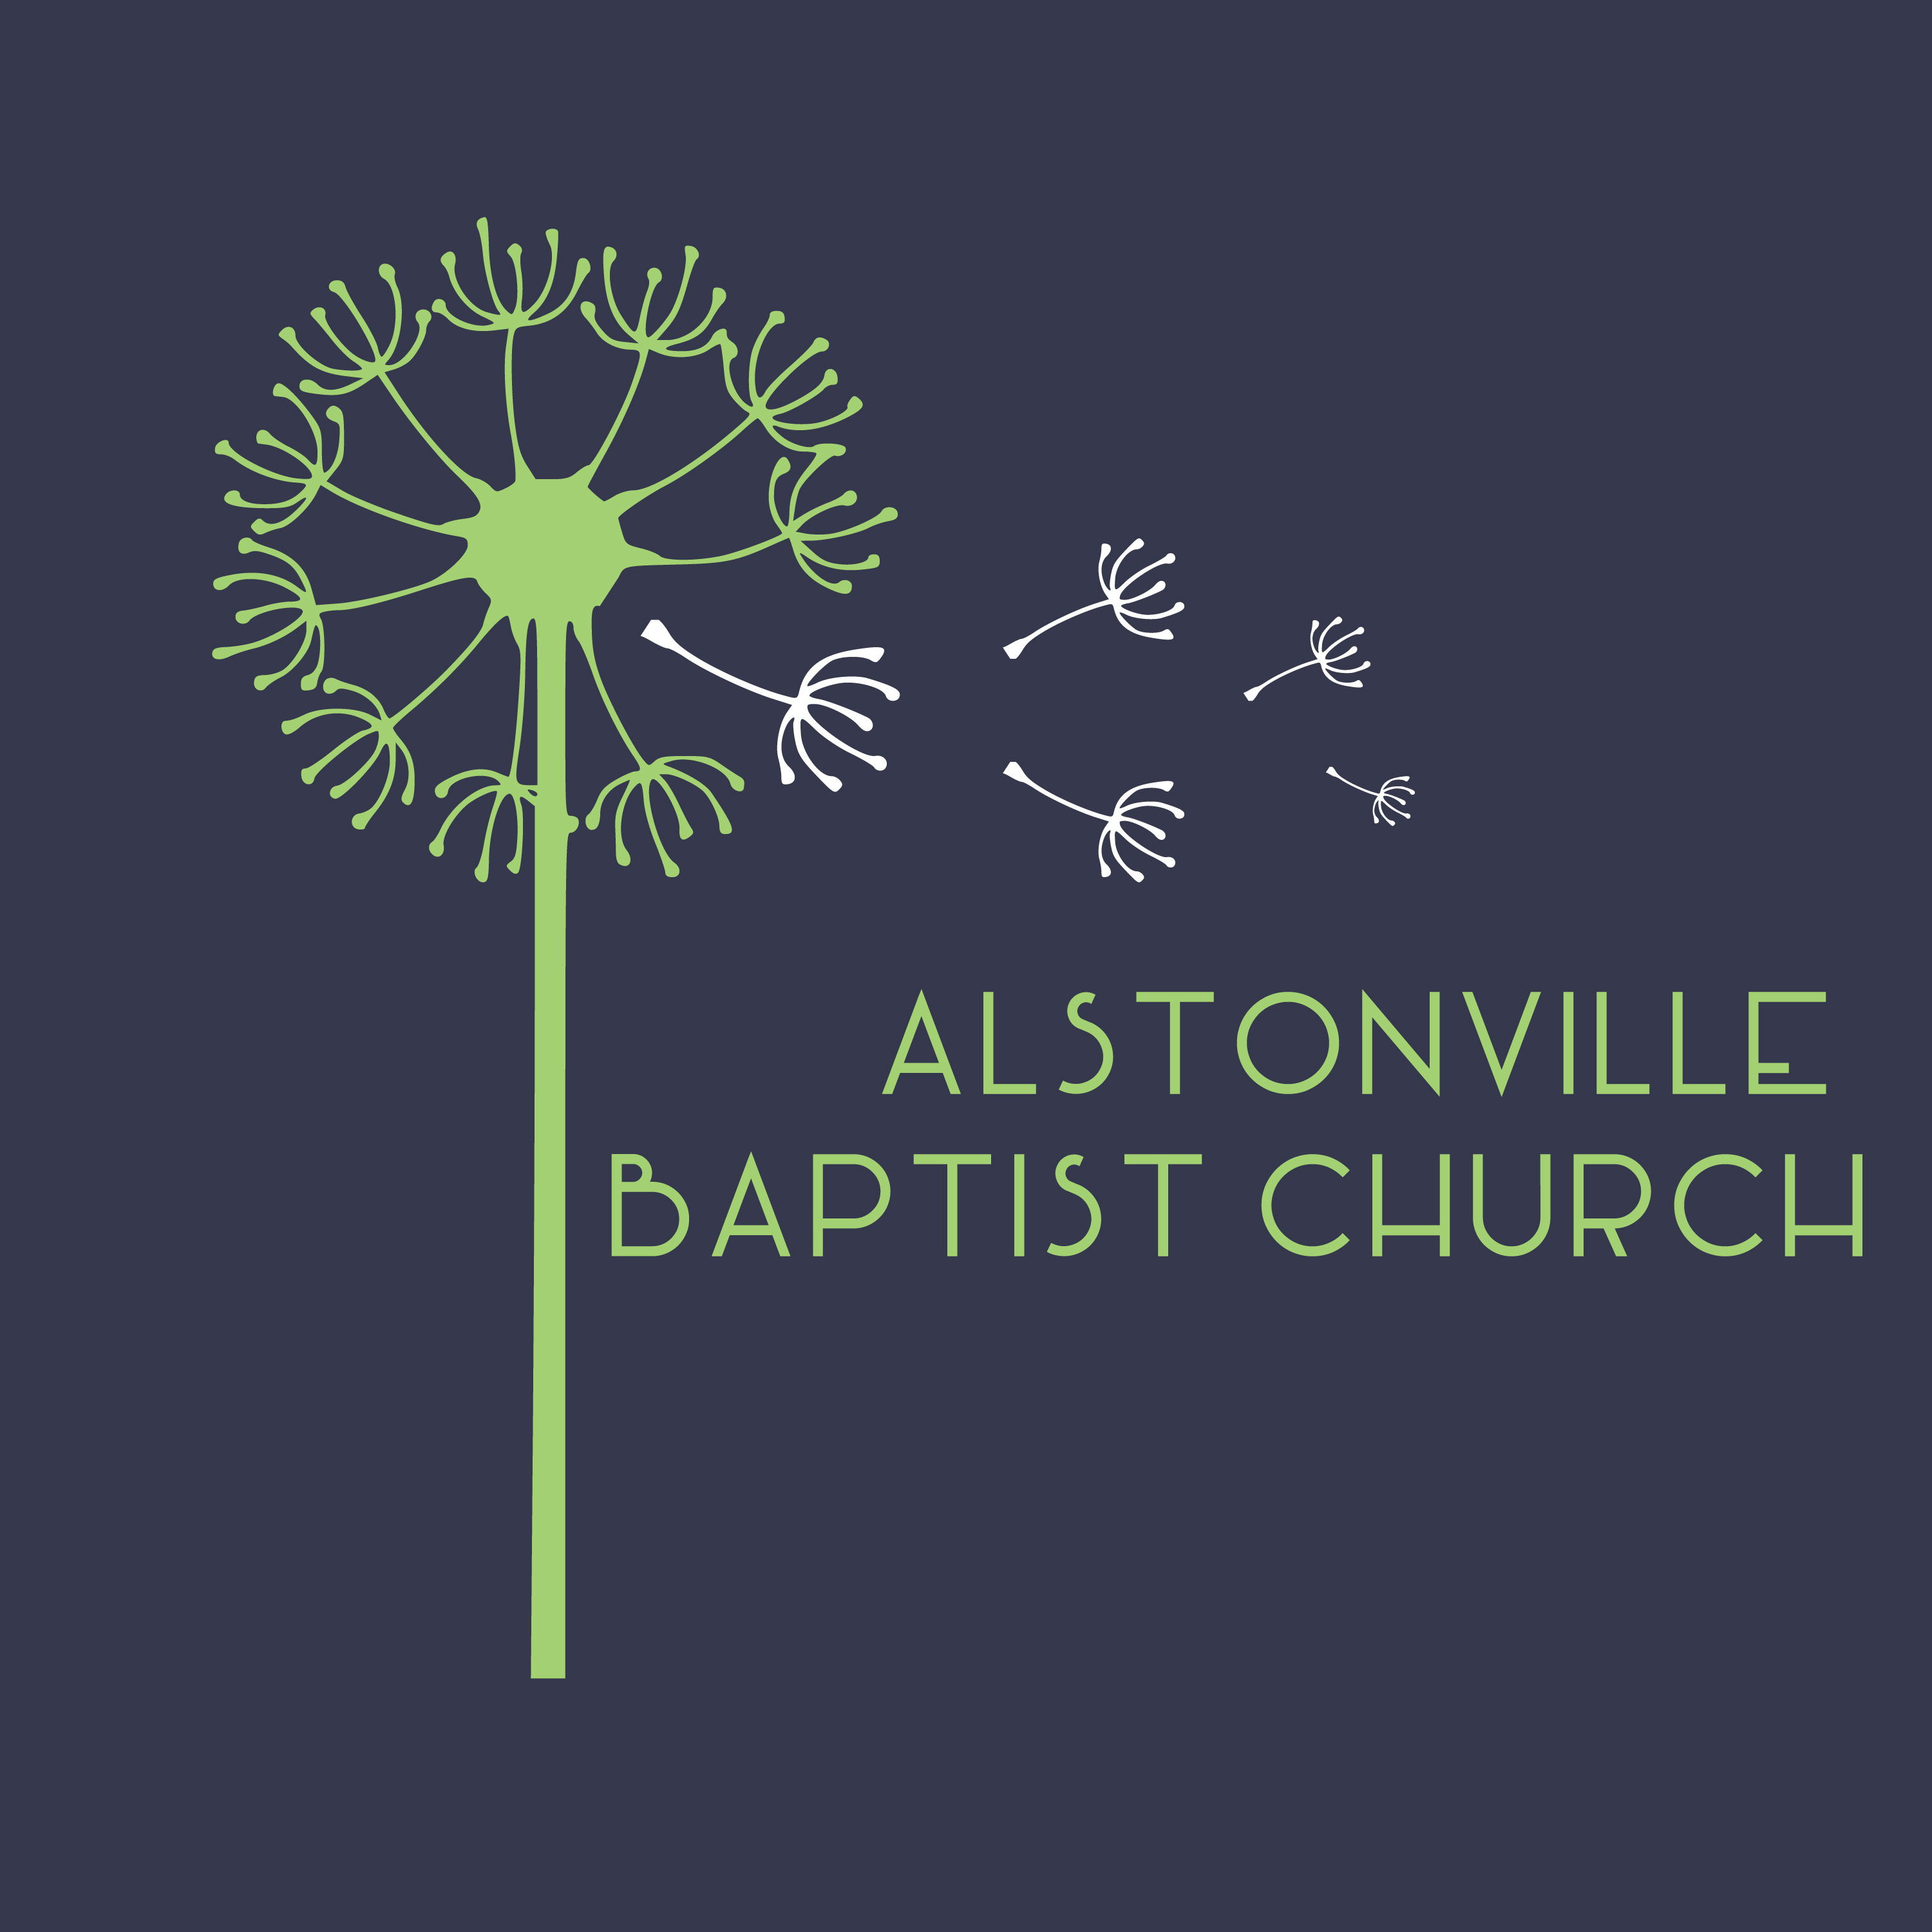 Alstonville Baptist Church